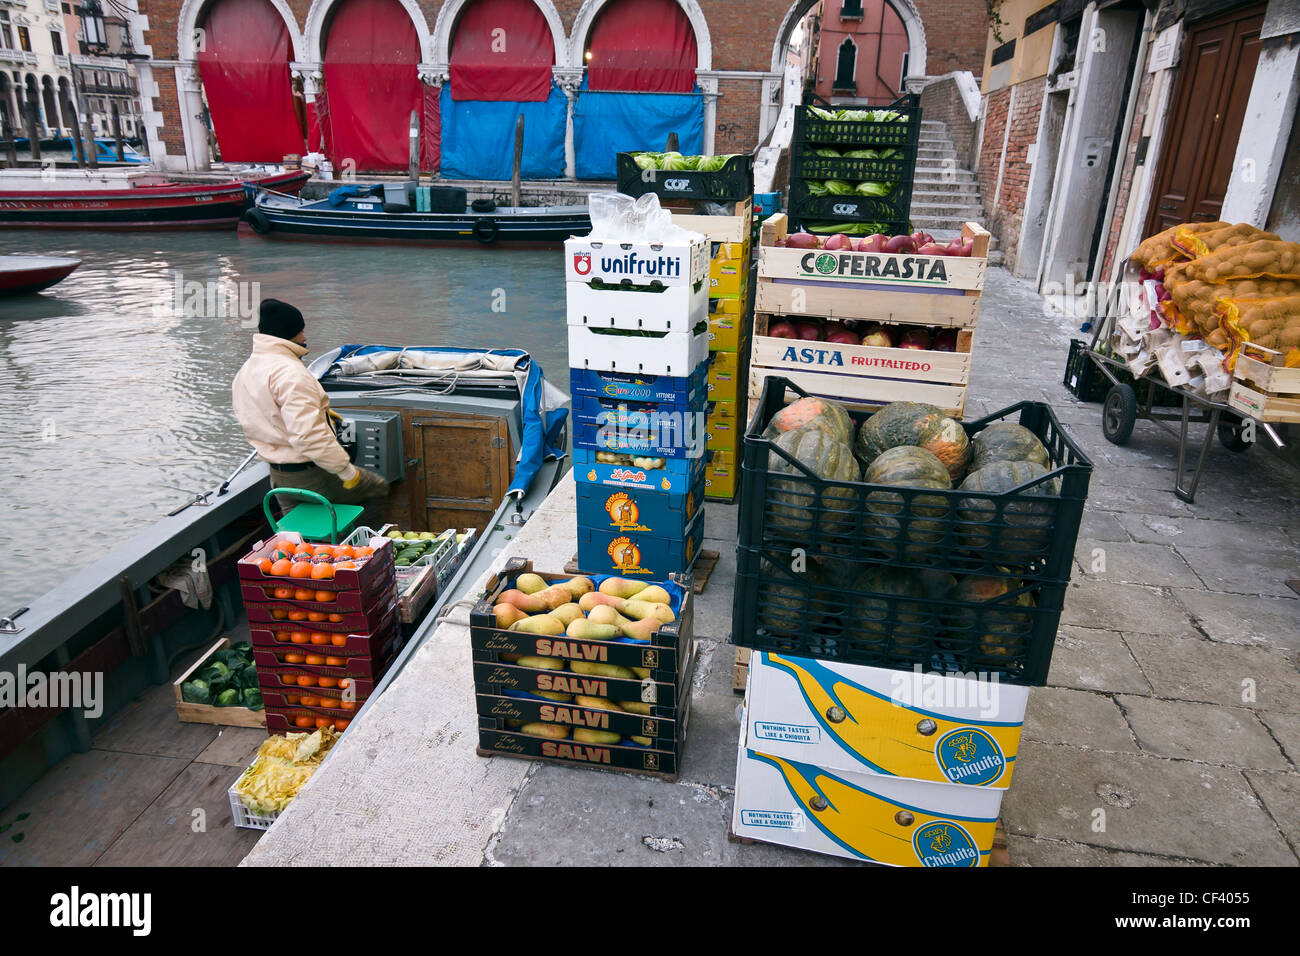 Un homme éjacule fruits et légumes de son bateau au marché du Rialto - Venise, Venezia, Italie, Europe Banque D'Images